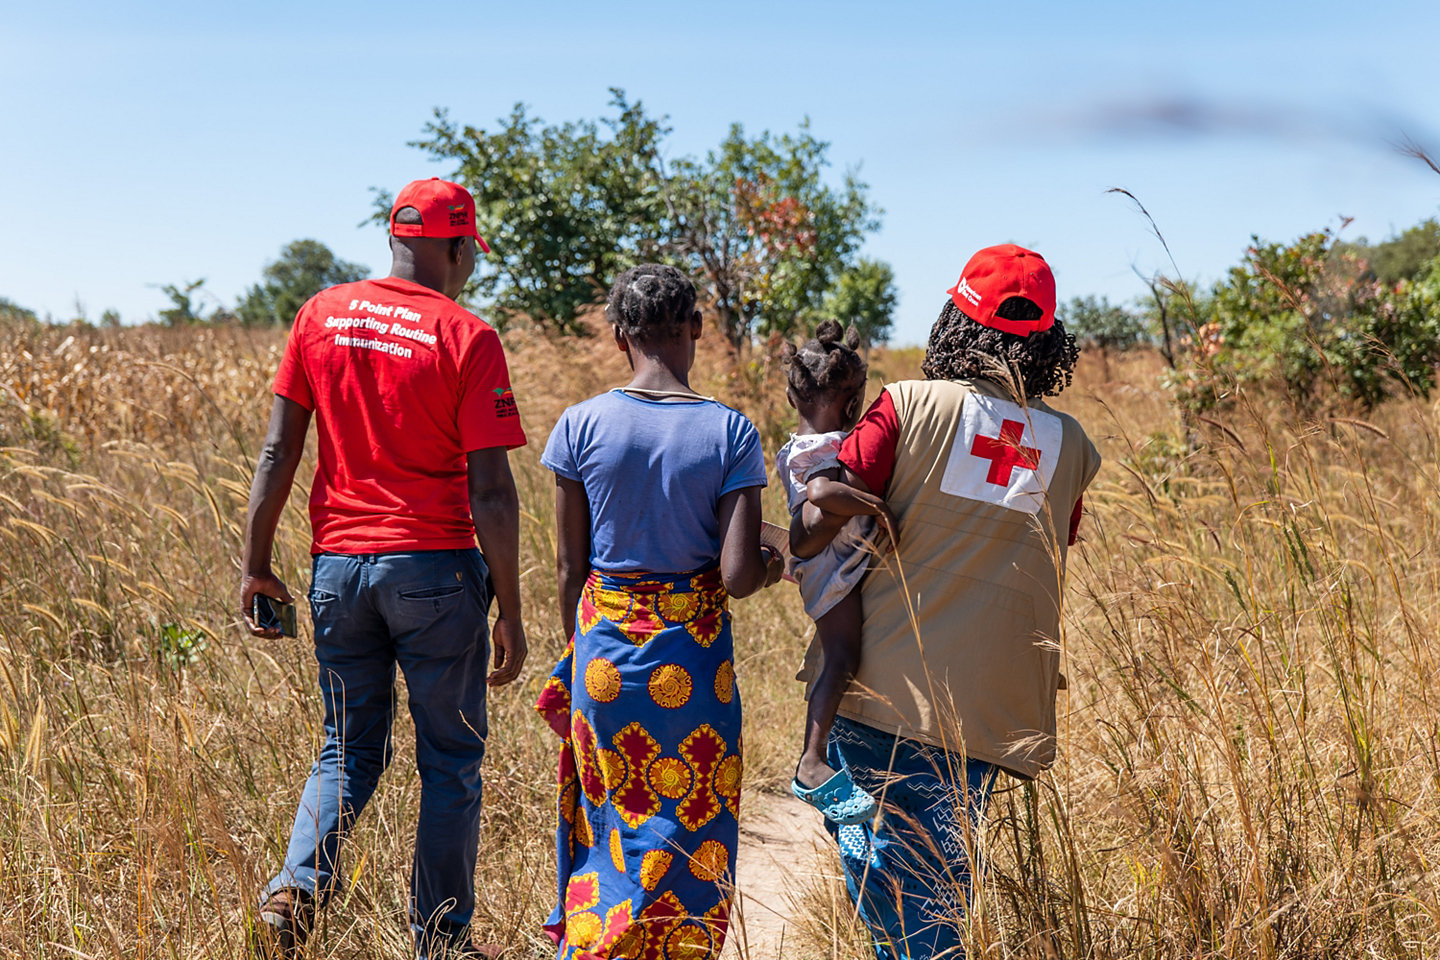 Cruz Roja de Zambia